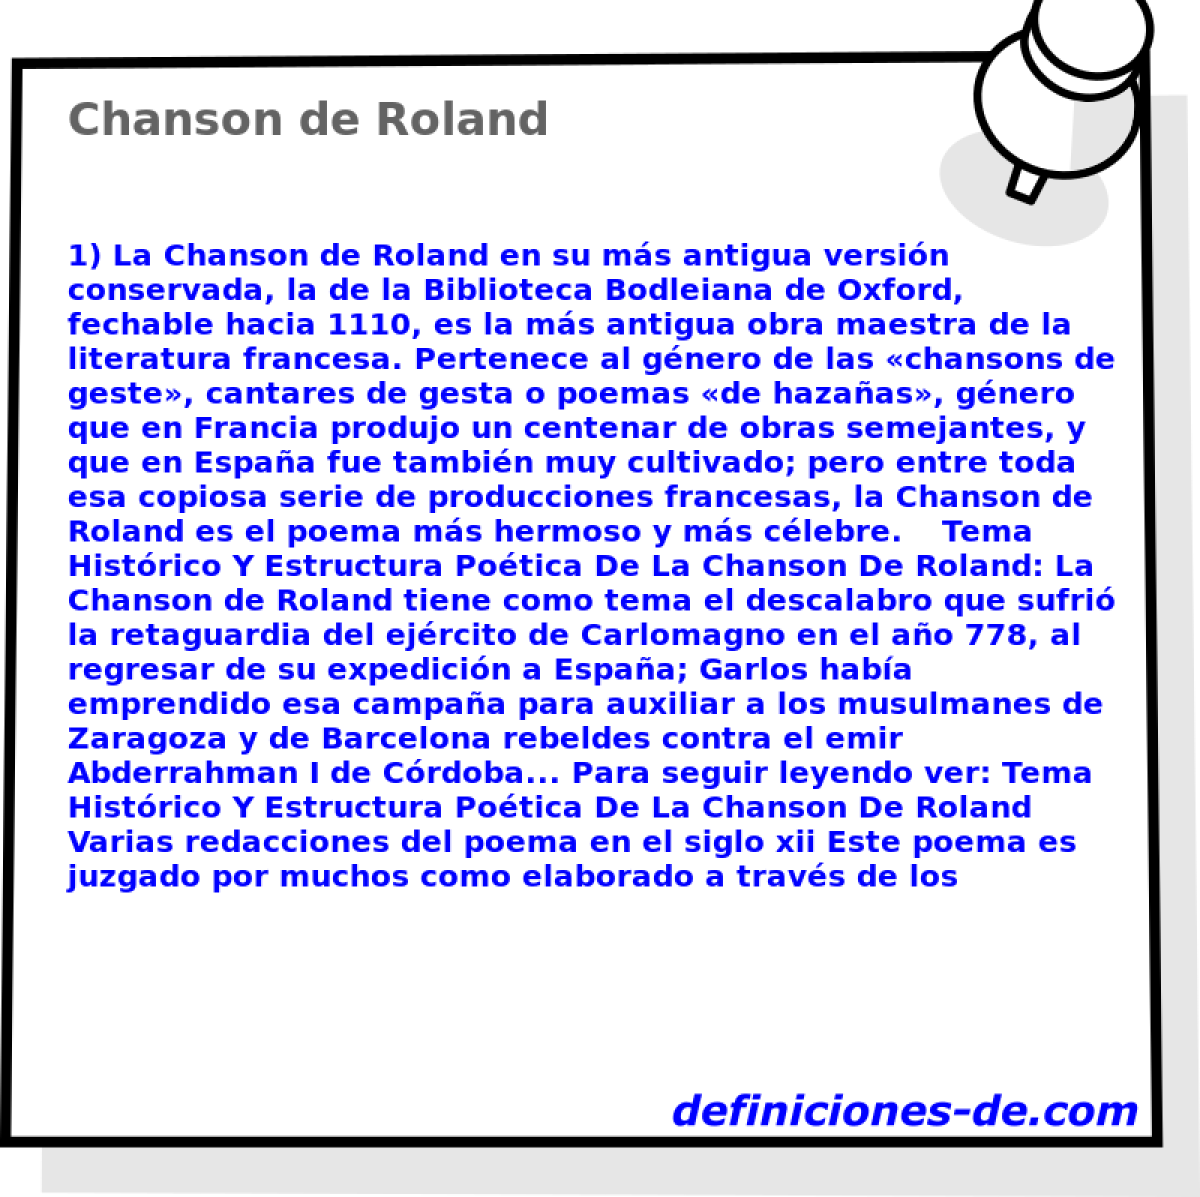 Chanson de Roland 